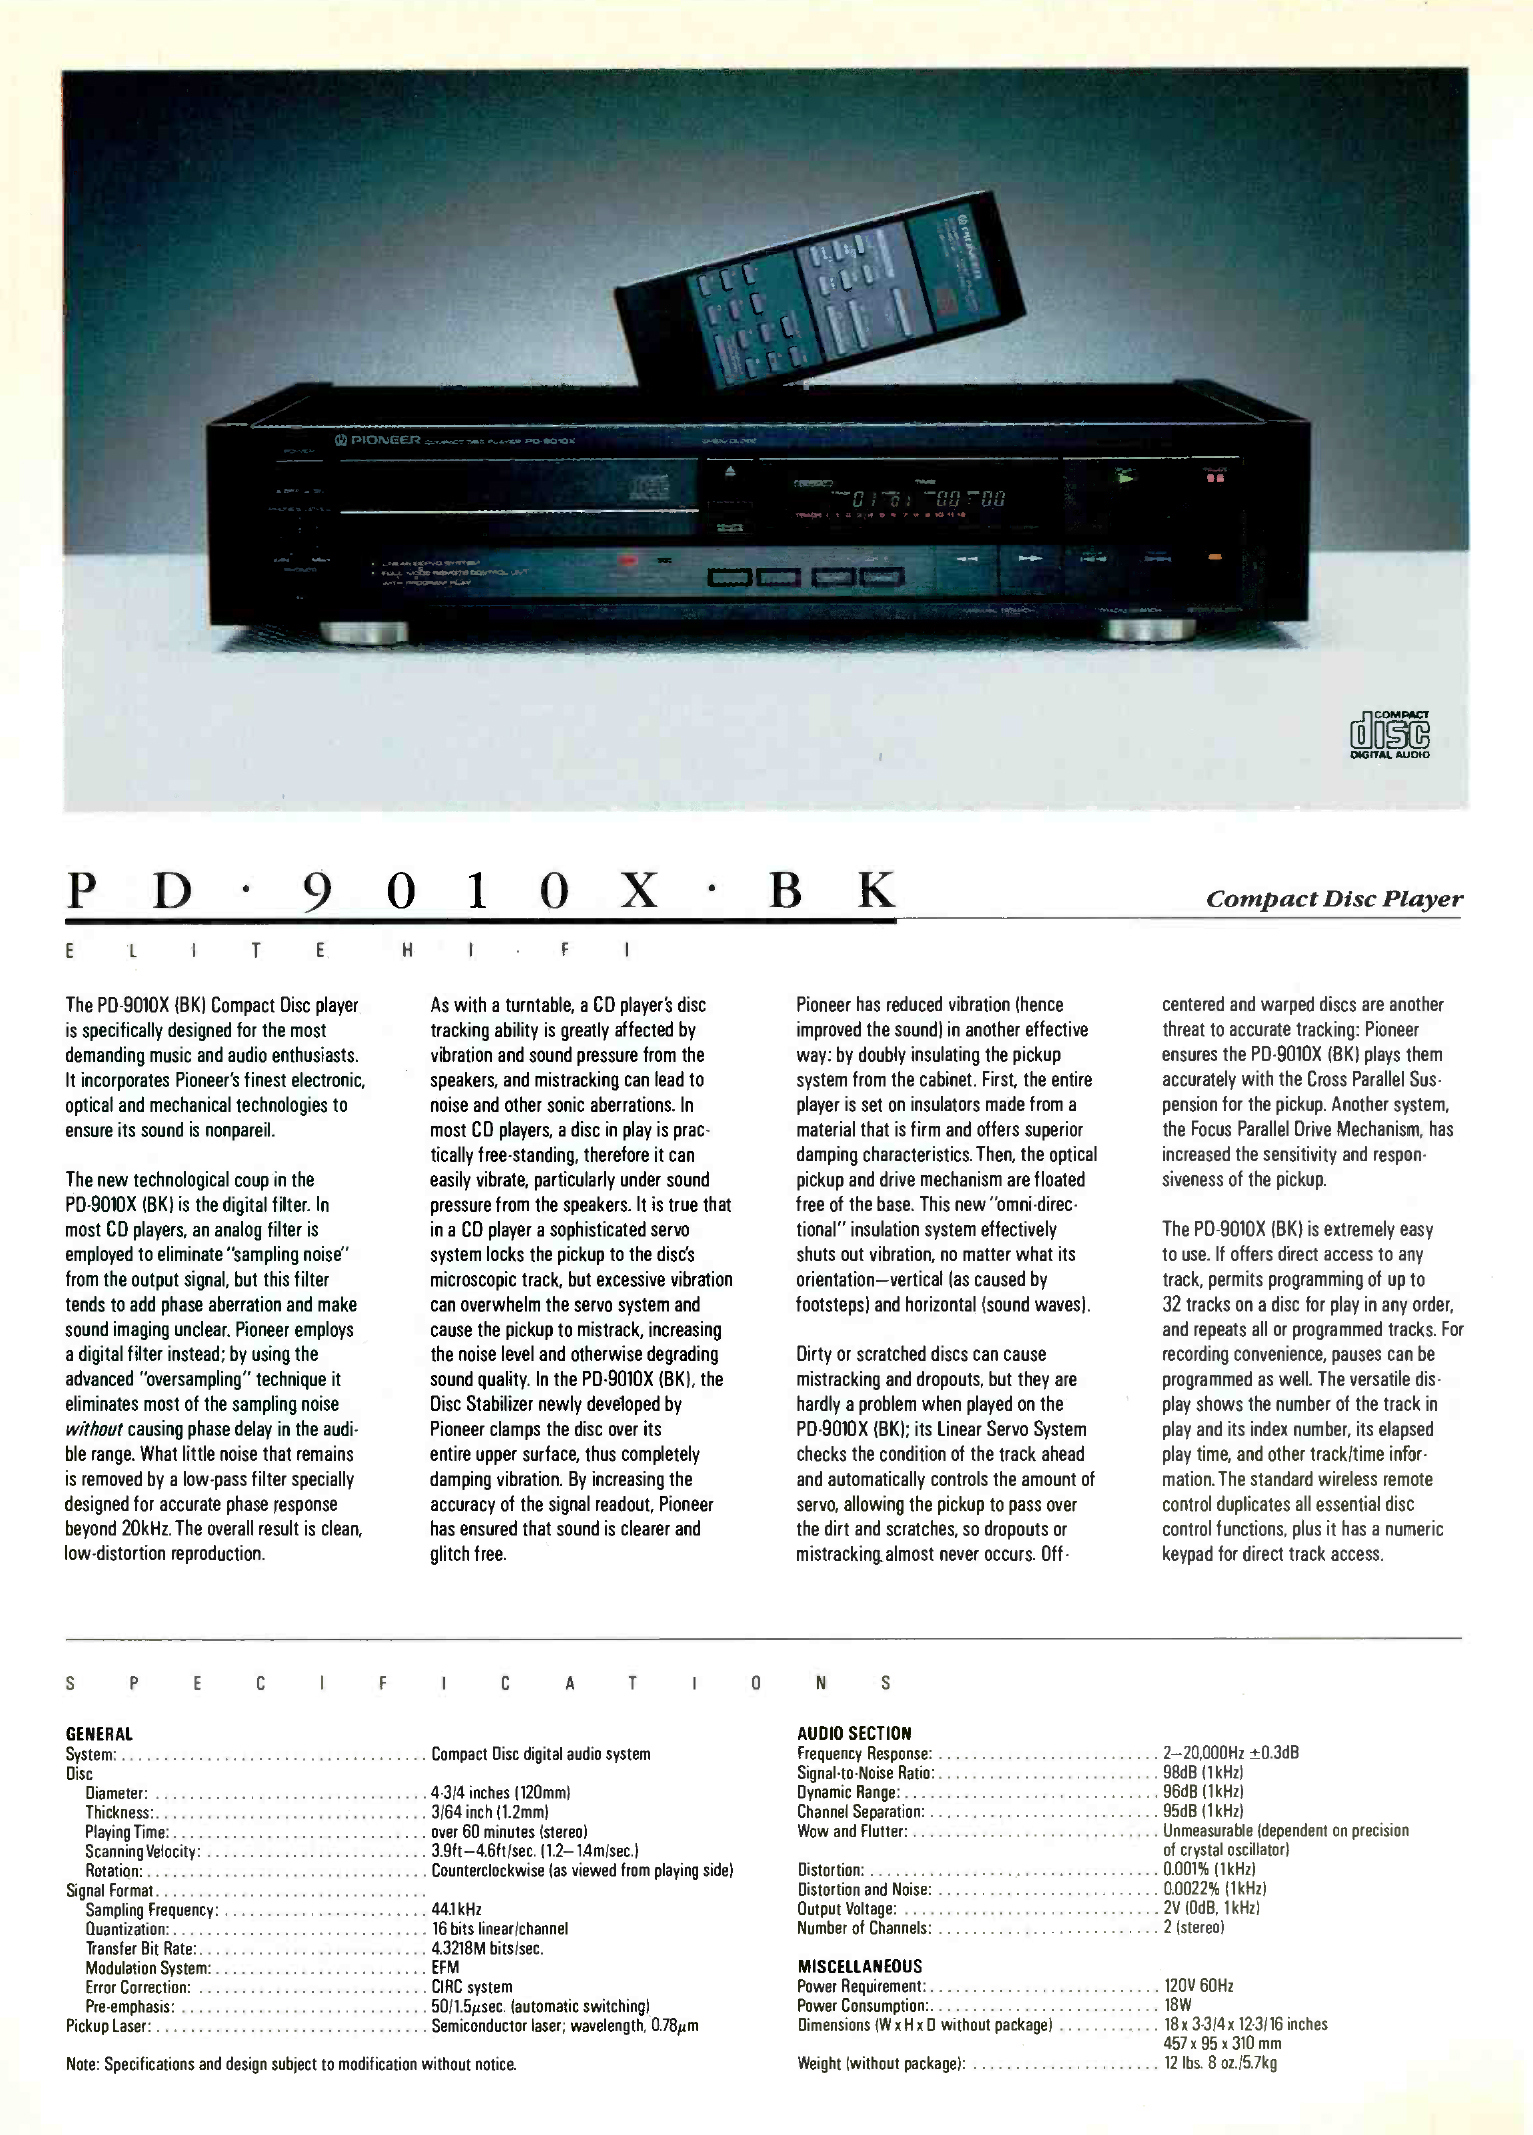 1985 Pioneer Elite Katalog-3.jpg